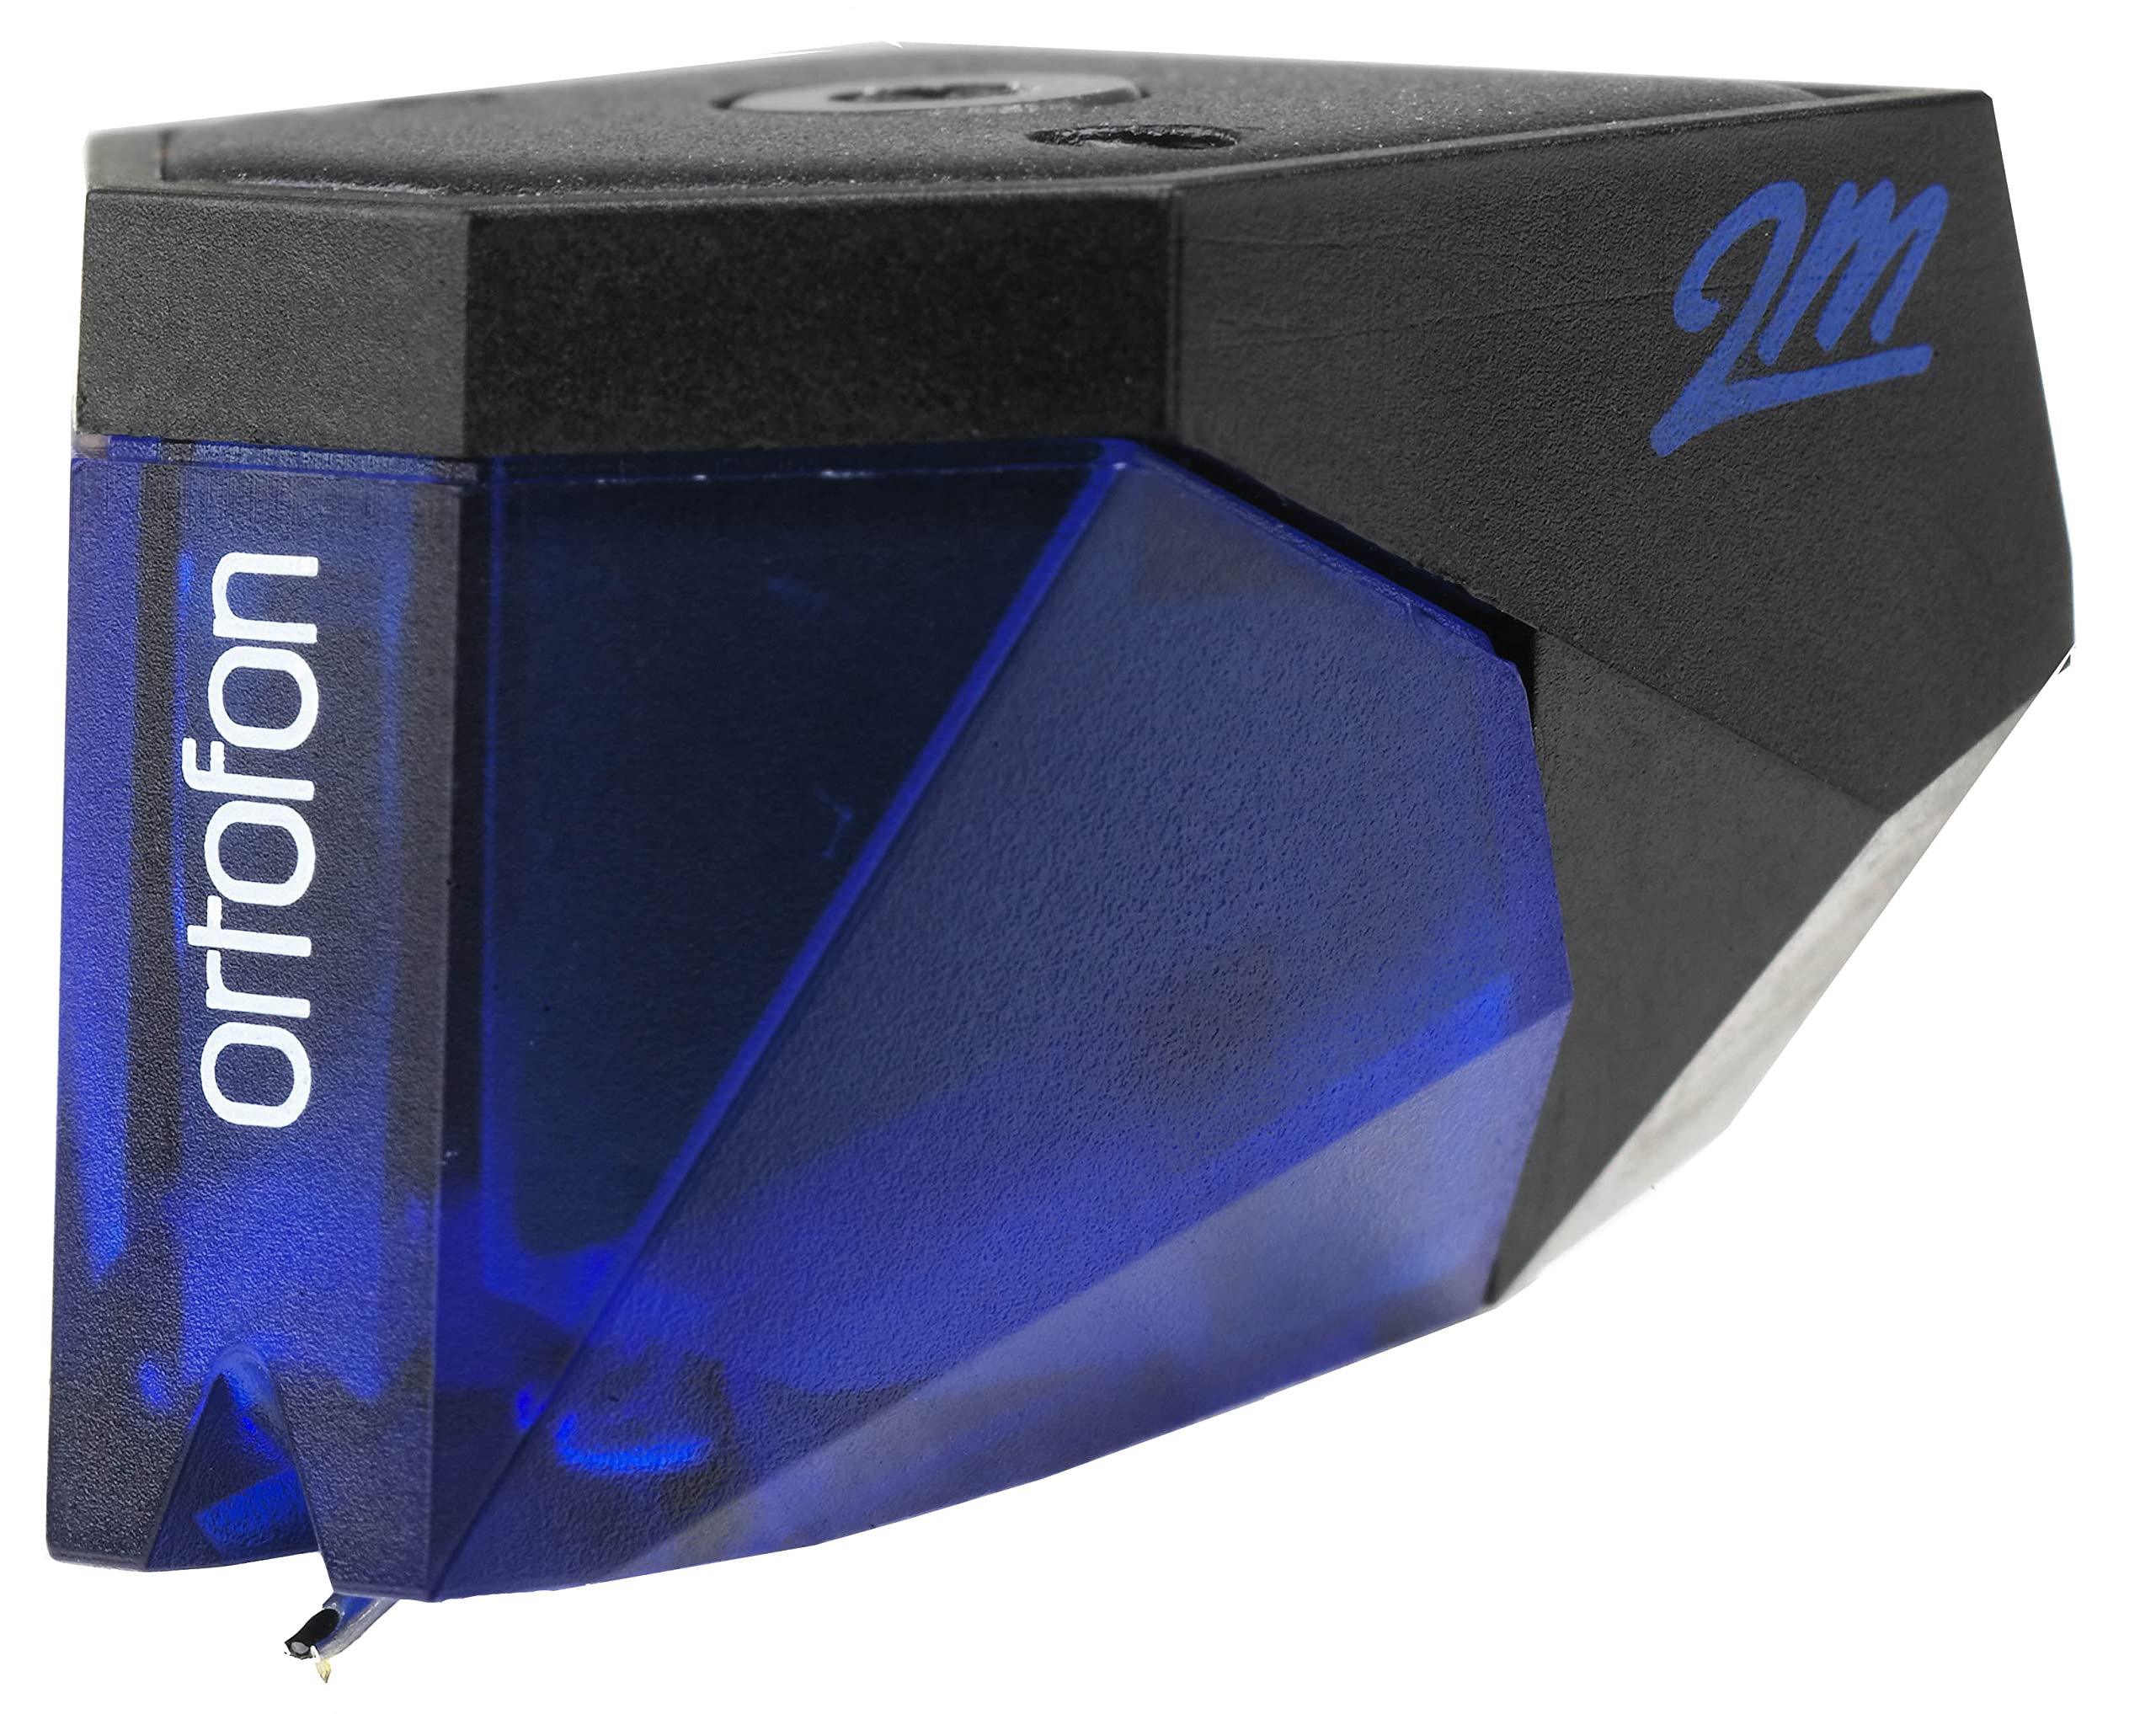 Ortofon Картридж с синим подвижным магнитом 2M...